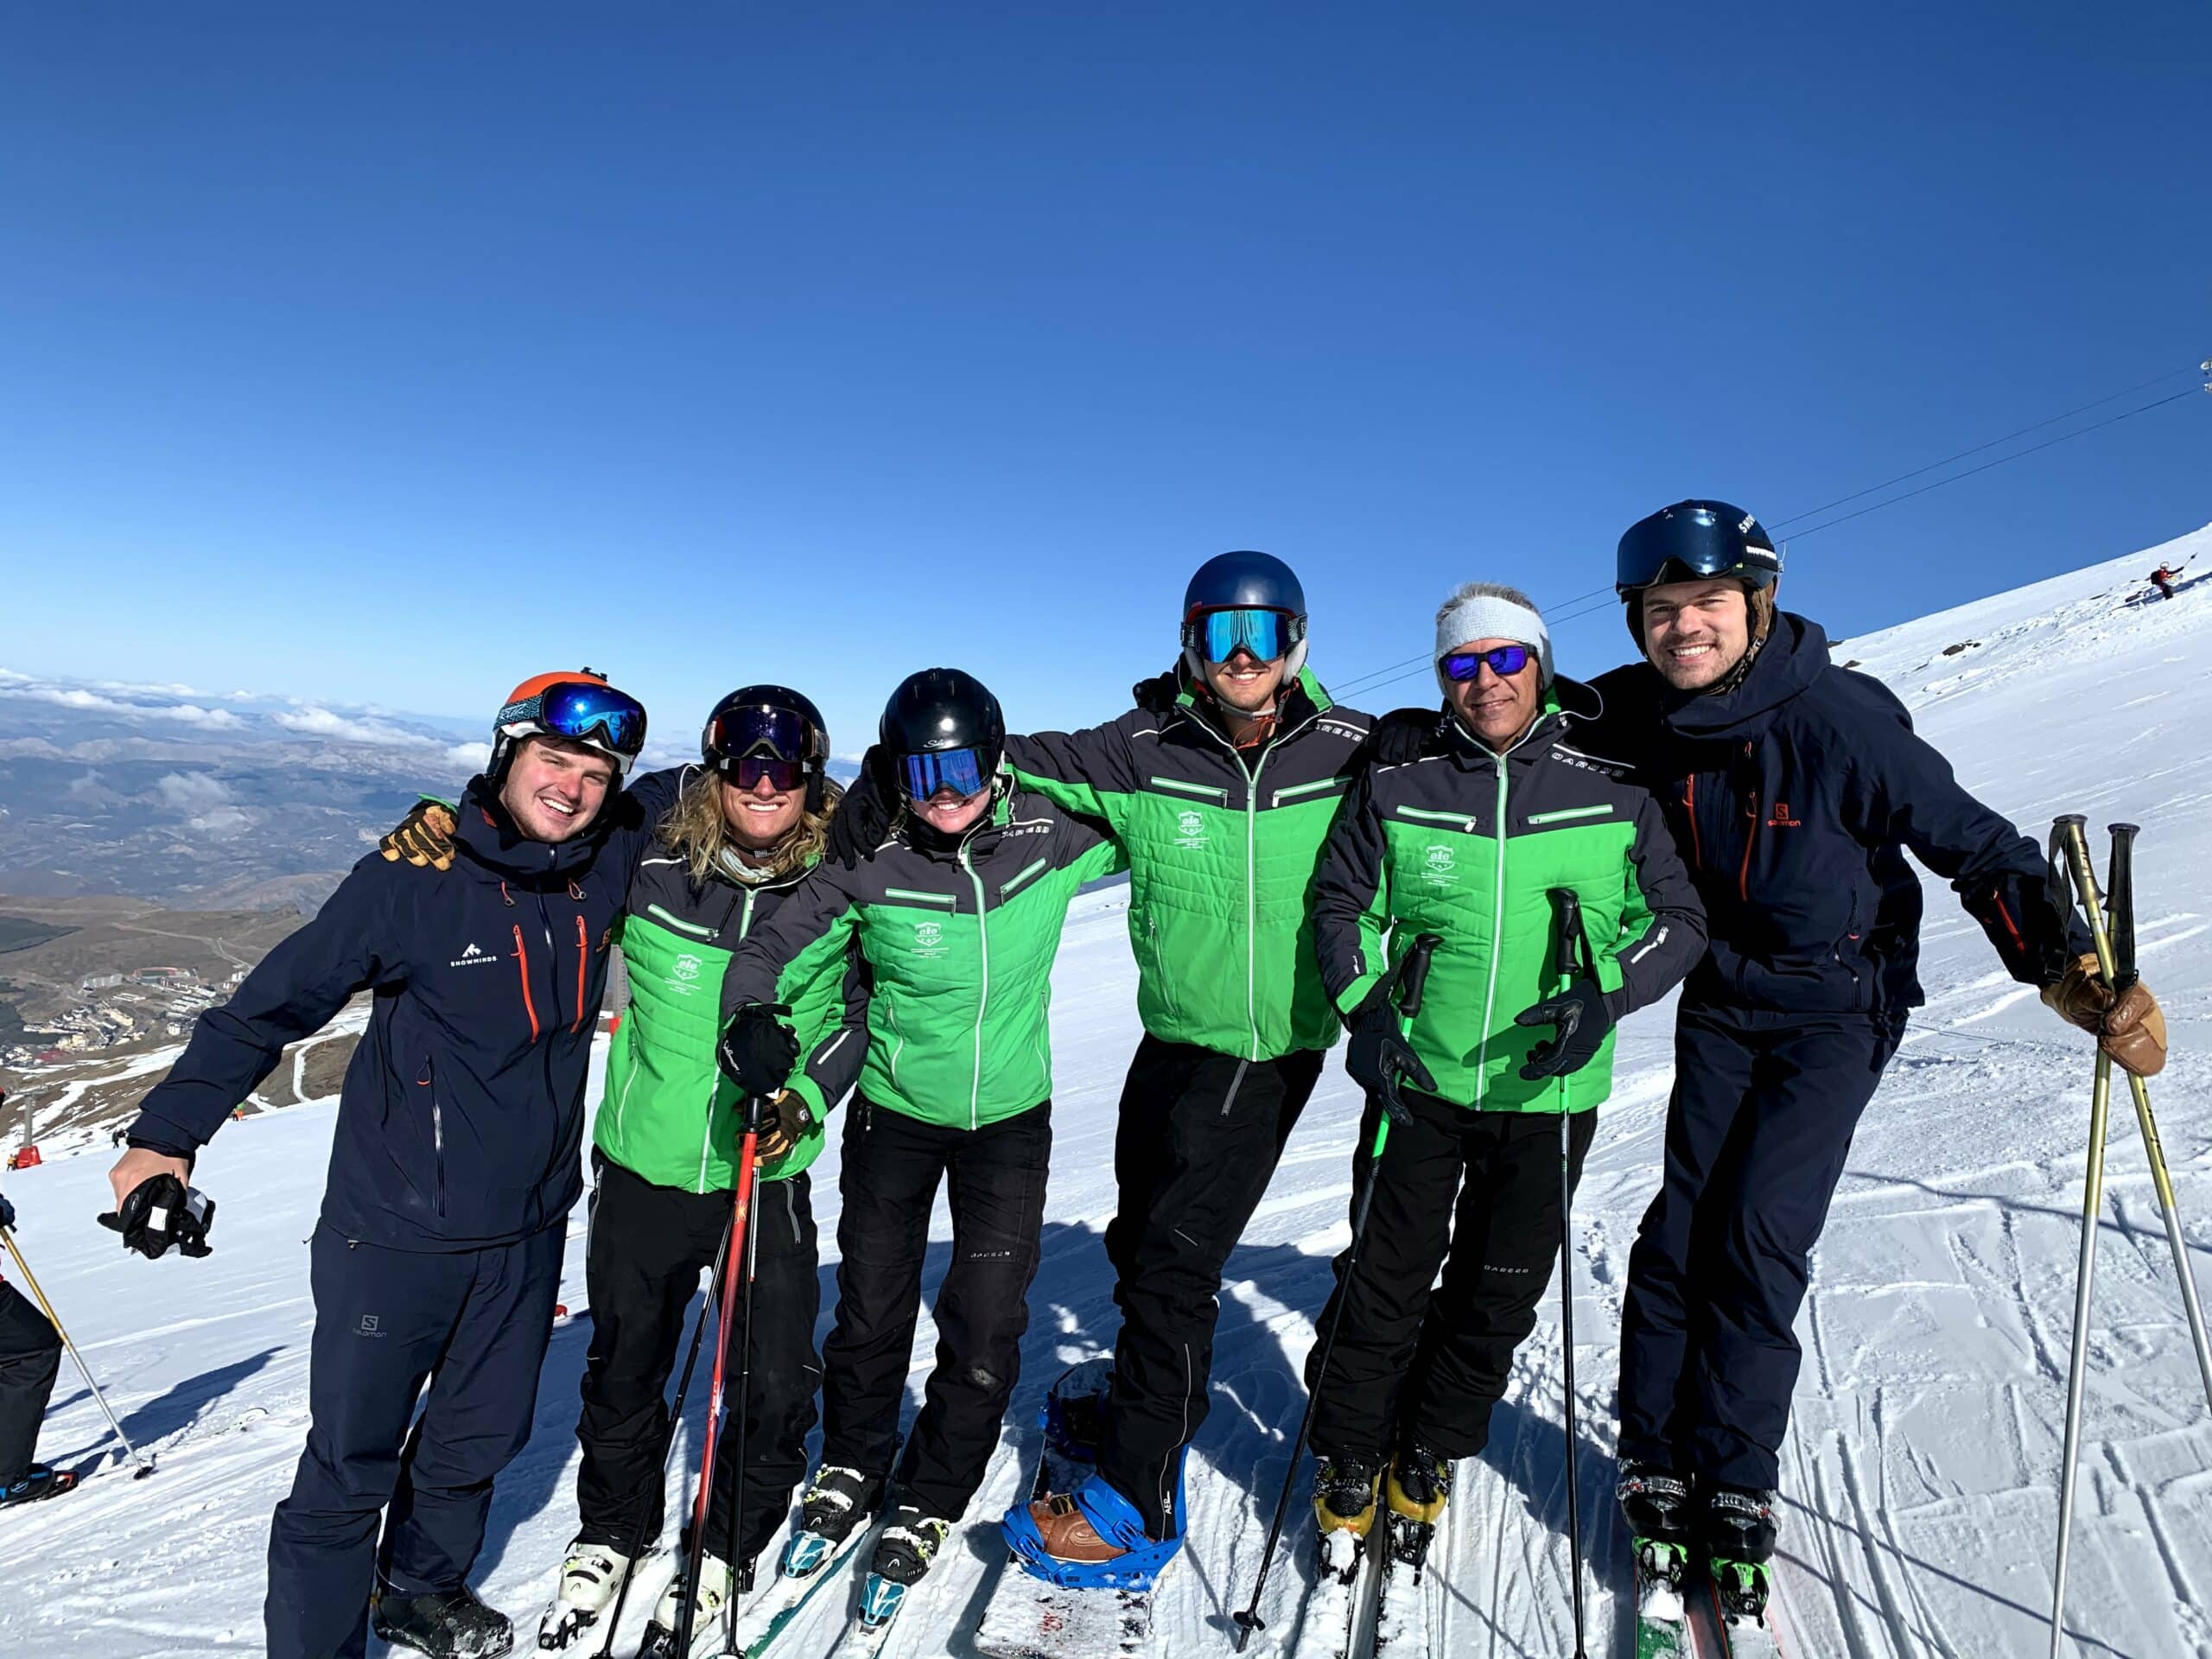 Bliv skiinstruktør i Spanien med uddannelse og job